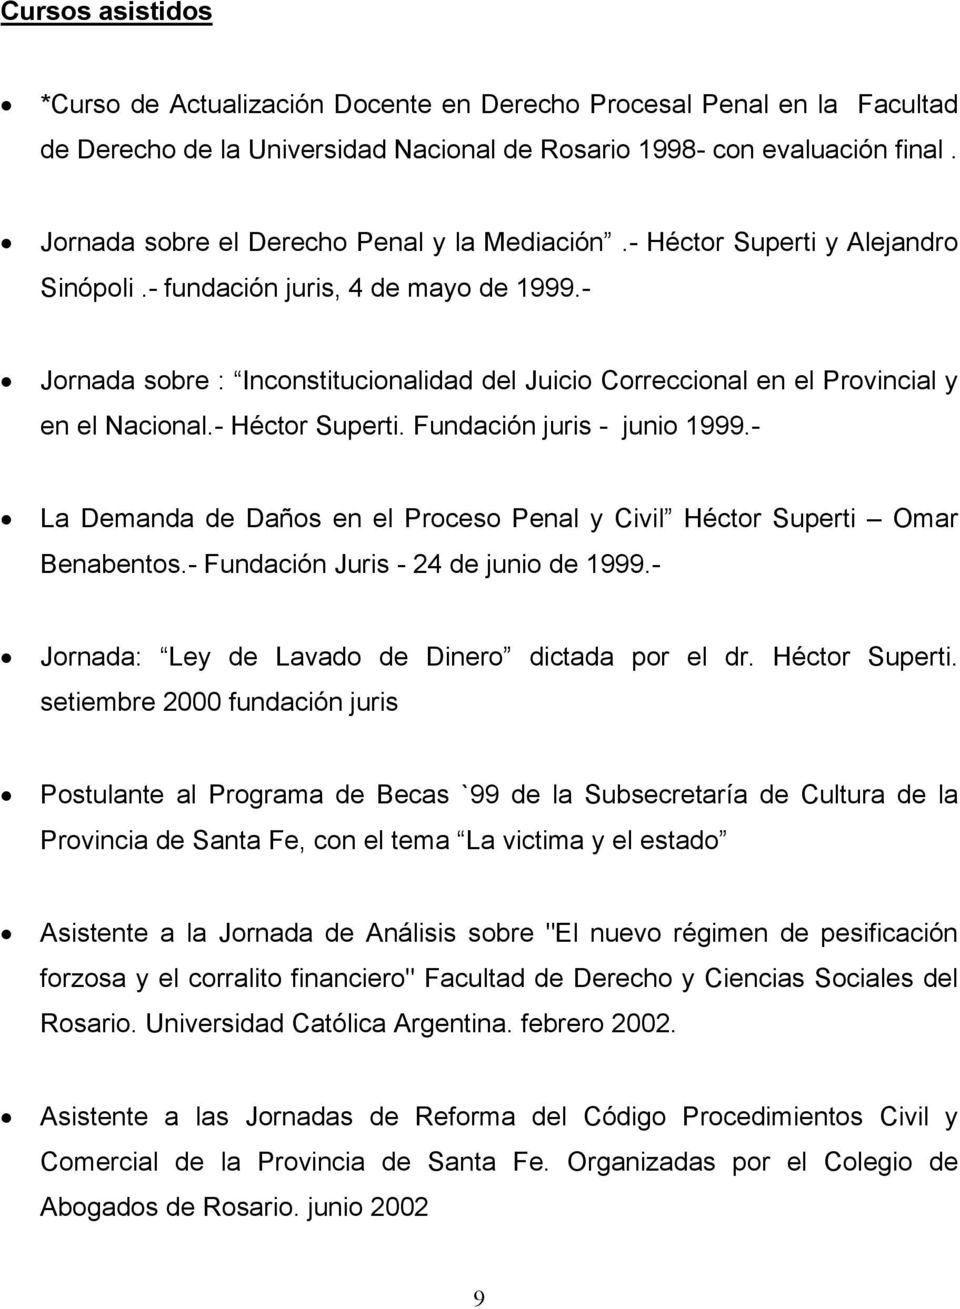 - Jornada sobre : Inconstitucionalidad del Juicio Correccional en el Provincial y en el Nacional.- Héctor Superti. Fundación juris - junio 1999.